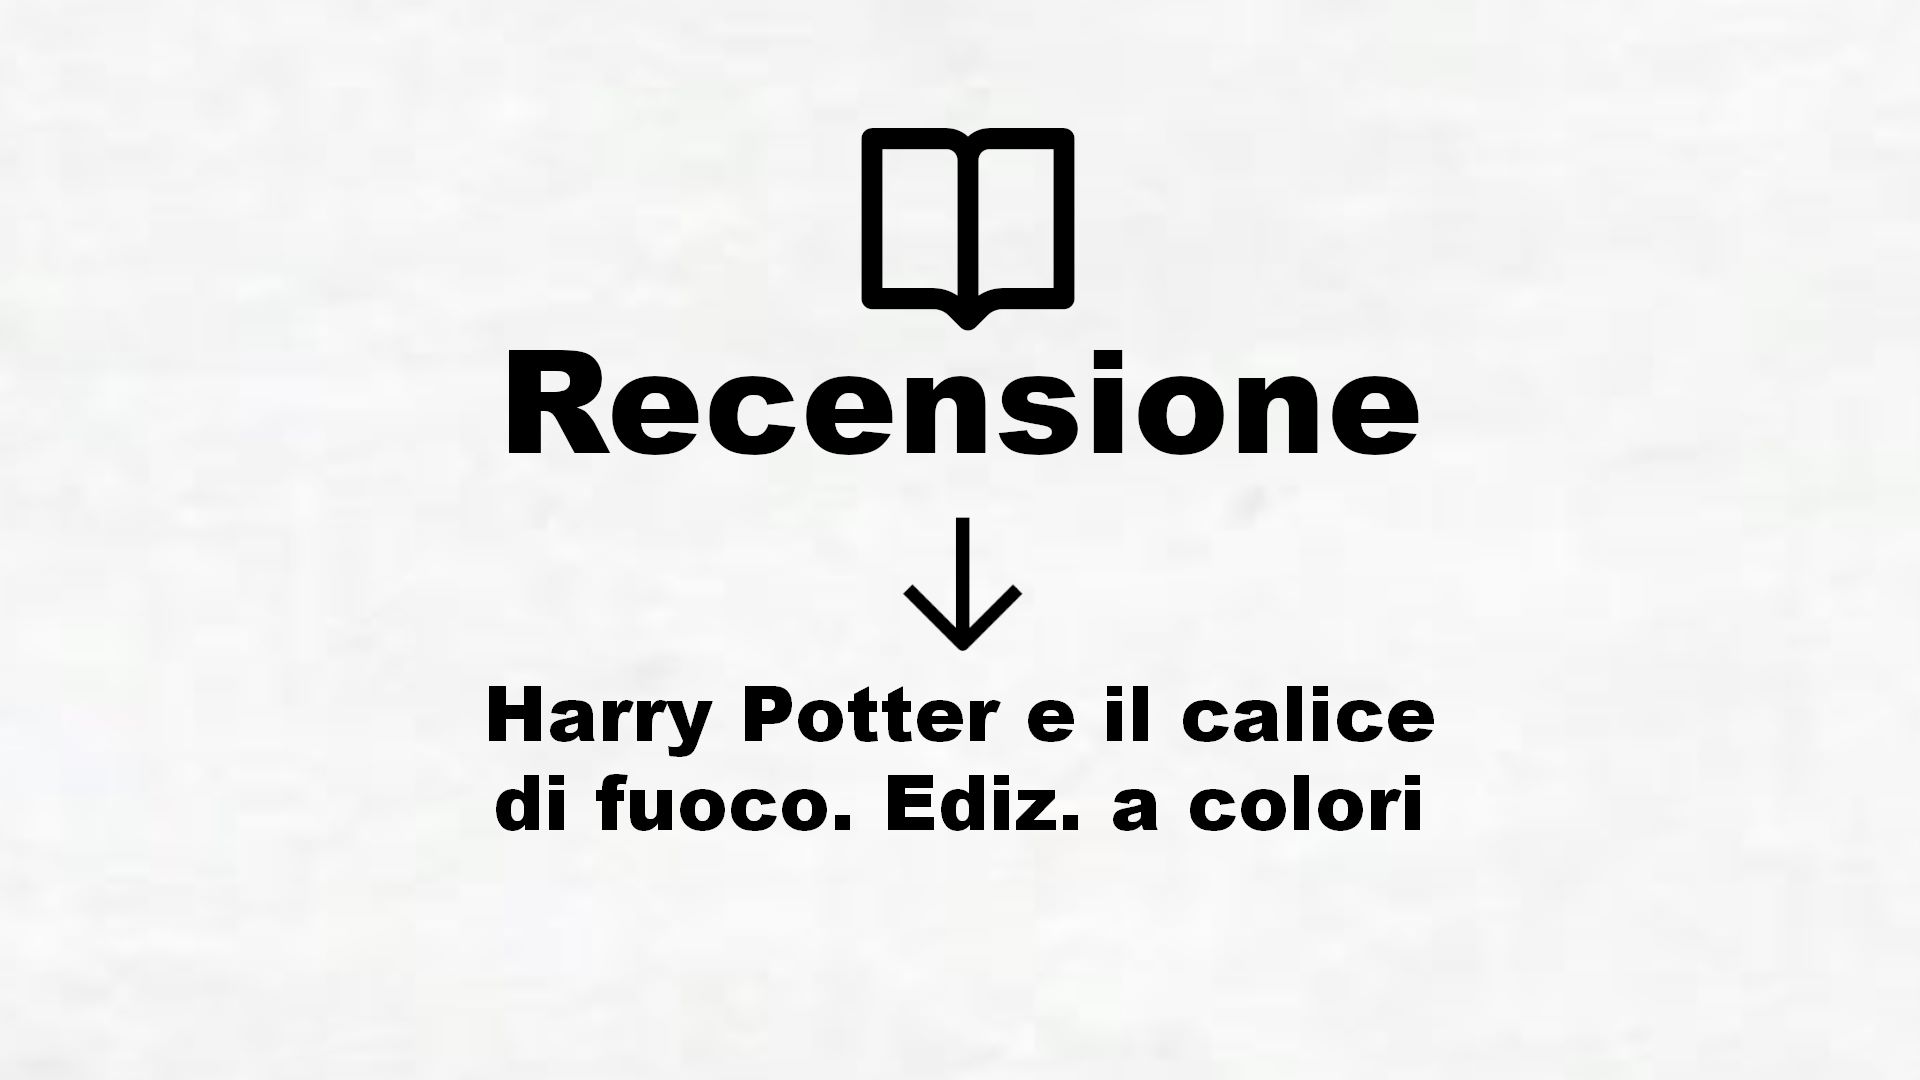 Harry Potter e il calice di fuoco. Ediz. a colori – Recensione Libro